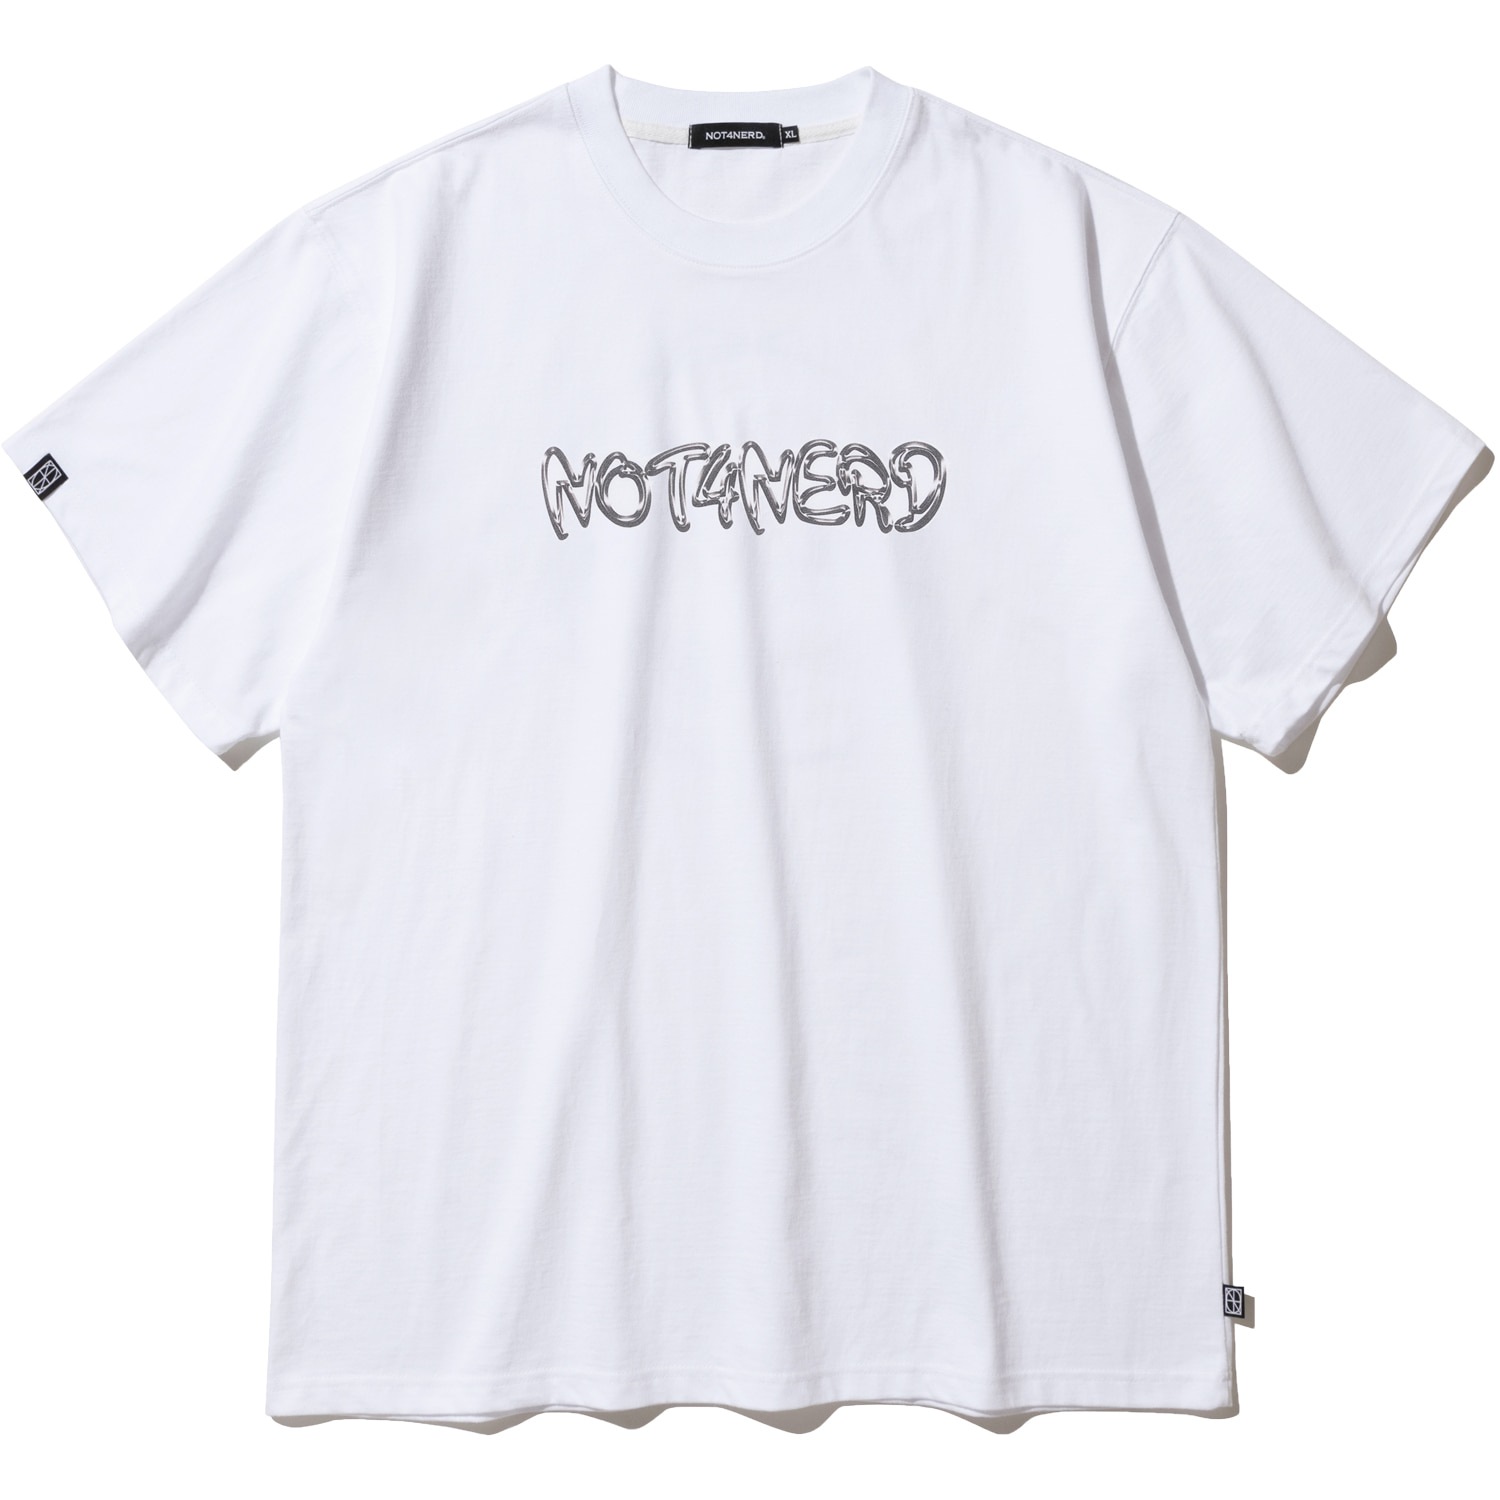 Metal Logo T-Shirts - White,NOT4NERD